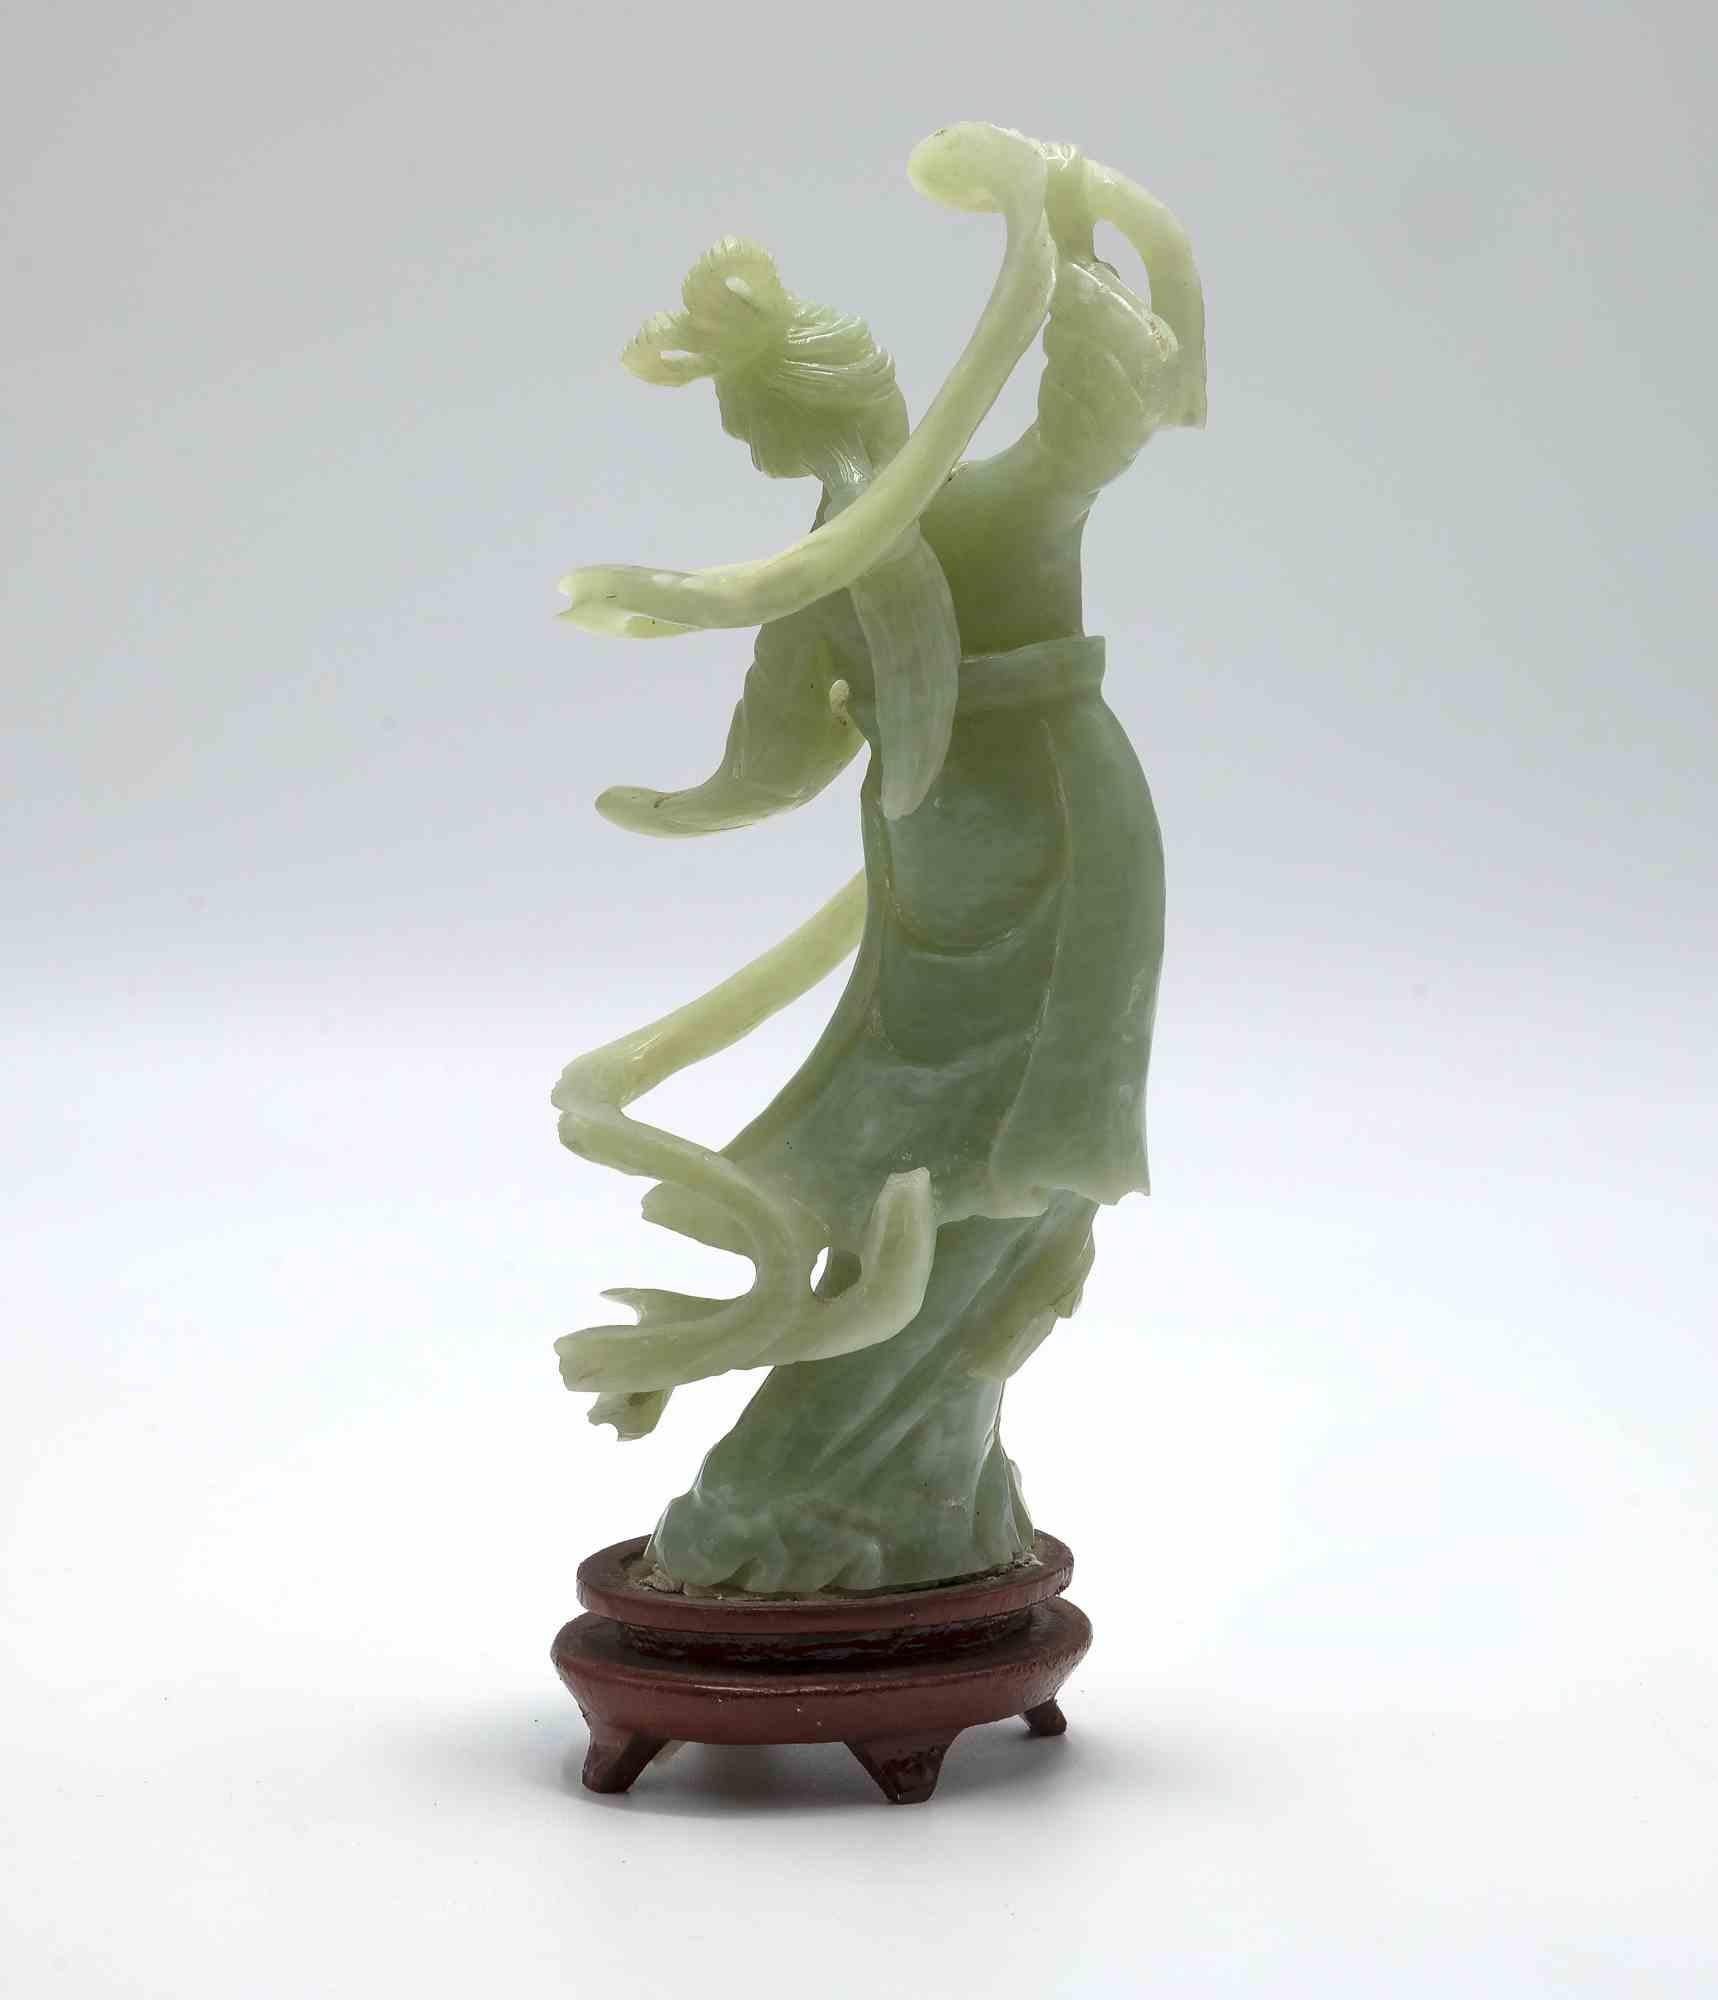 Die chinesische Serpentin-Skulptur im Vintage-Stil ist ein traditionelles Dekorationsobjekt, das in China zu Beginn des 20.

Serpentinenmarmor. 

Hergestellt in China. 

Gute Bedingungen. 

Eine kleine chinesische Serpentine-Skulptur, die He Xiangu